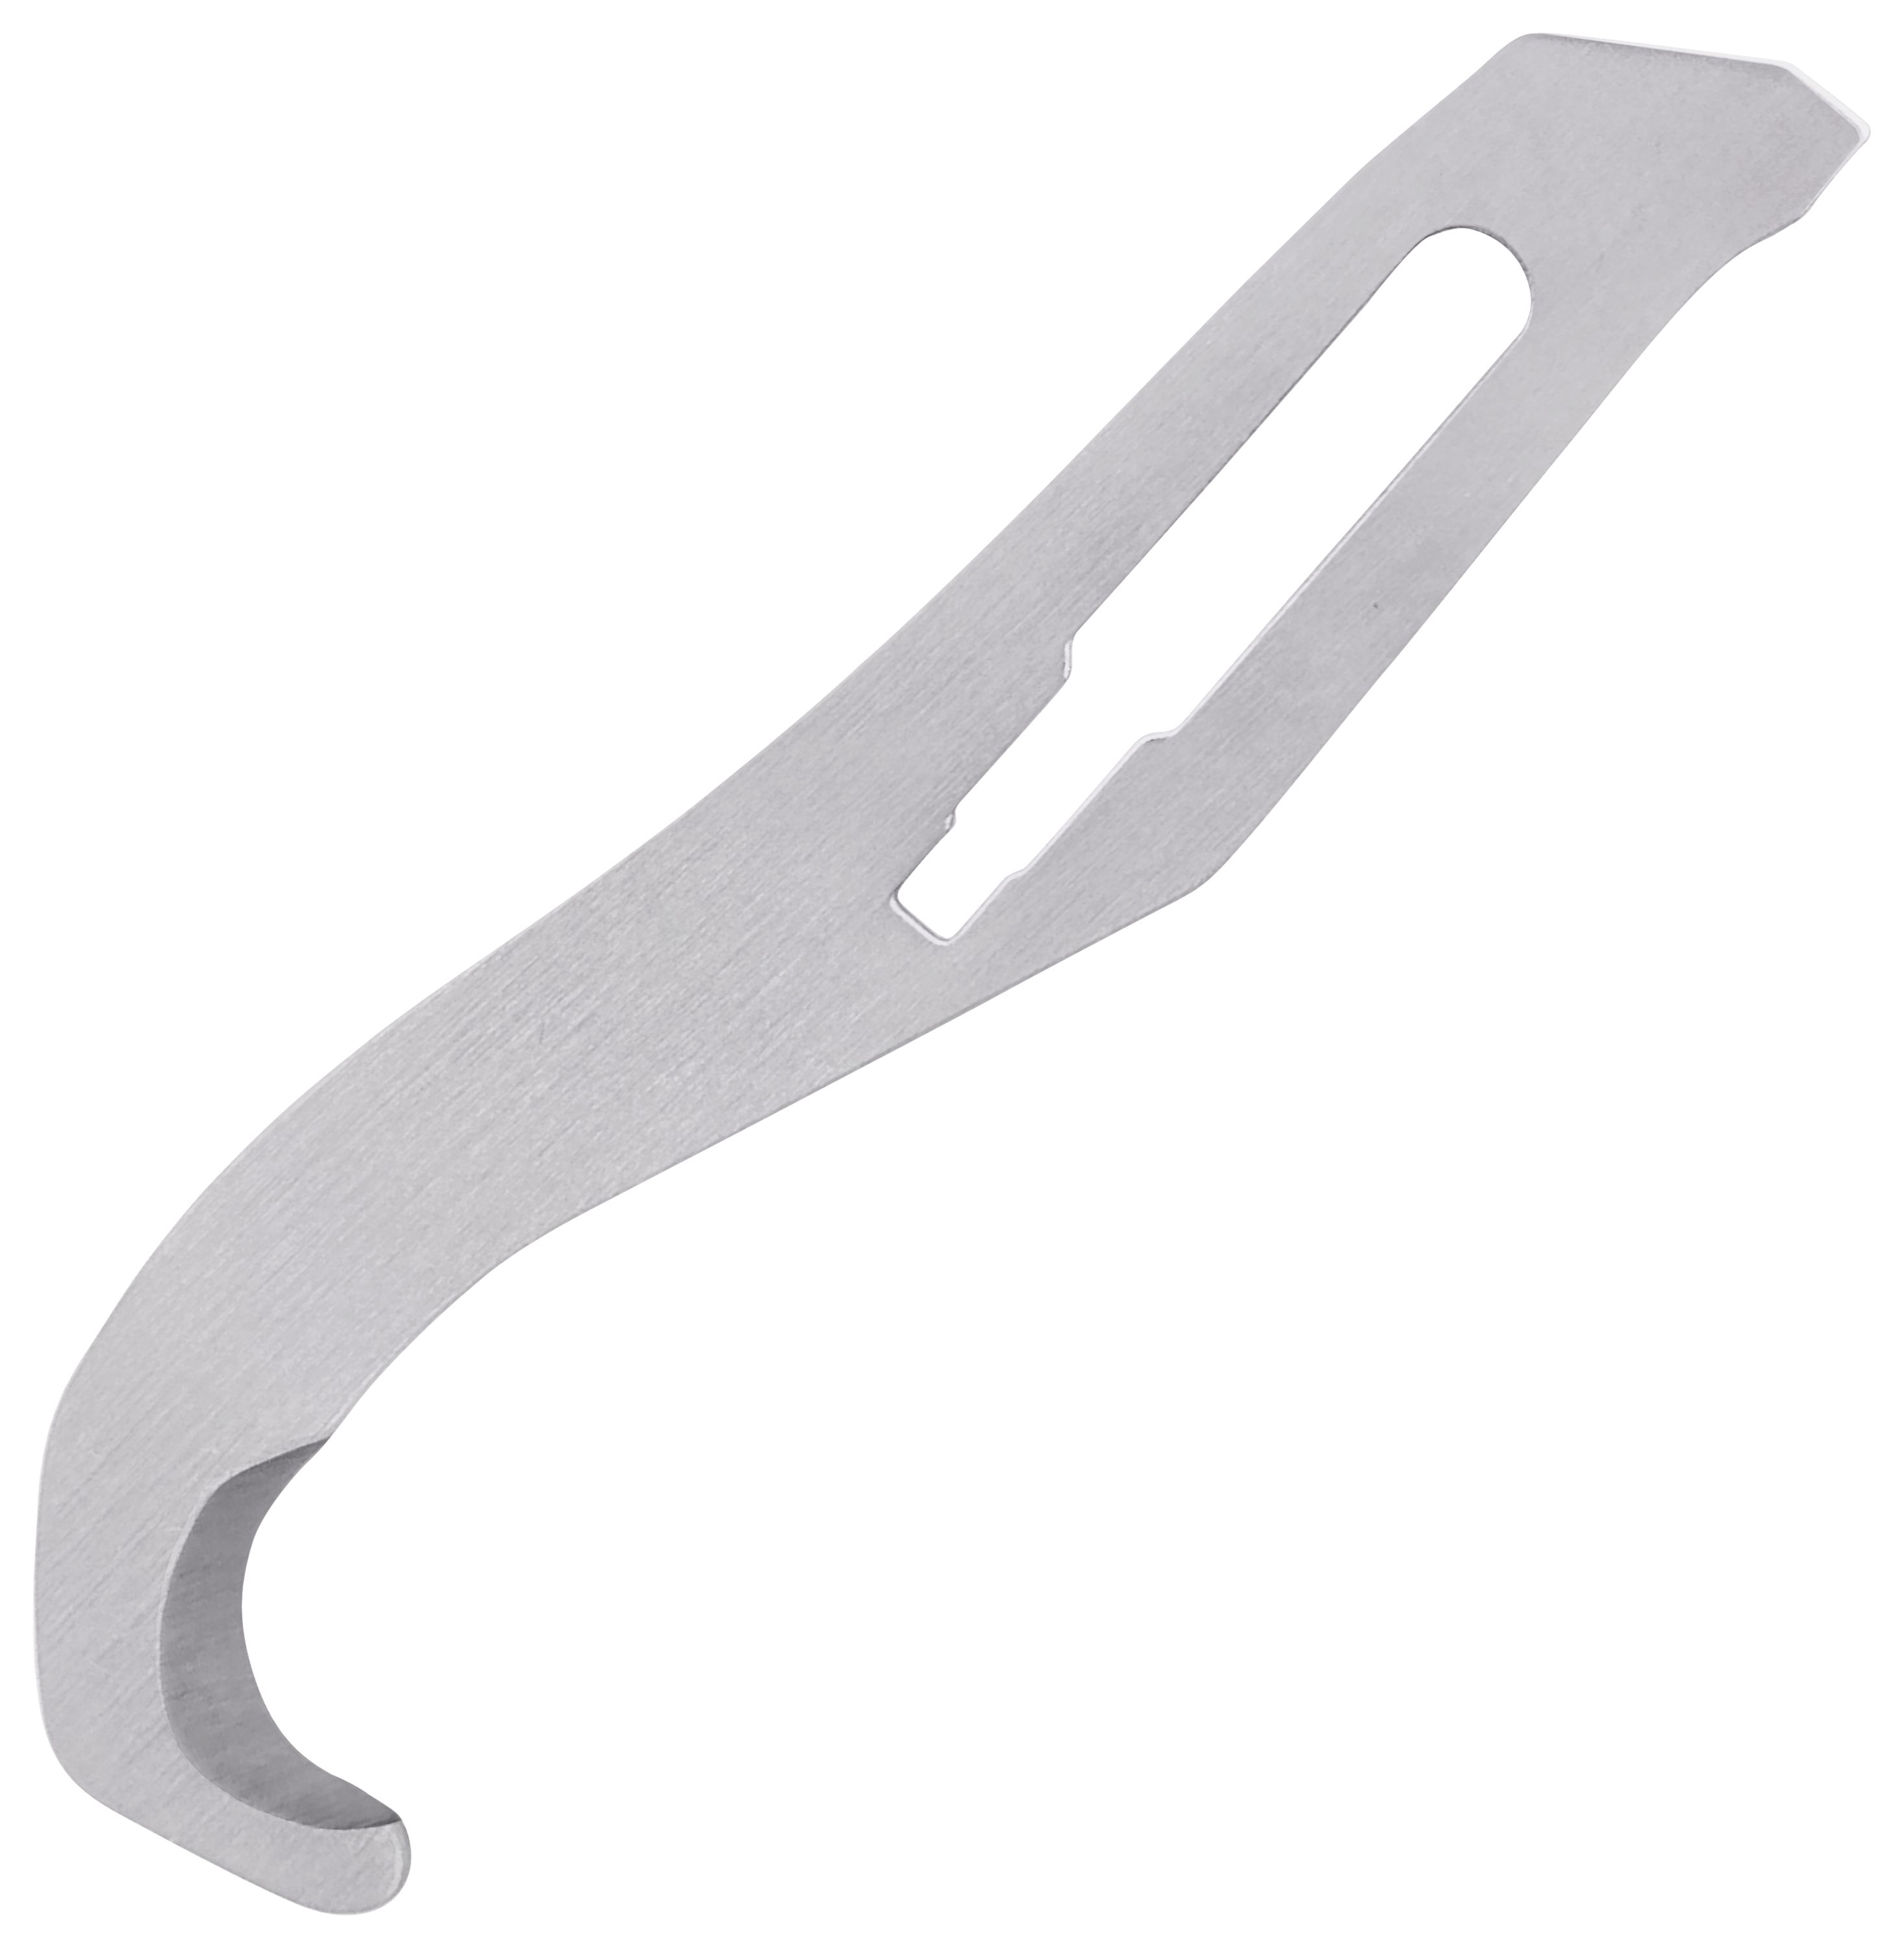 Havalon Piranta Replacement Gut Hook Blades